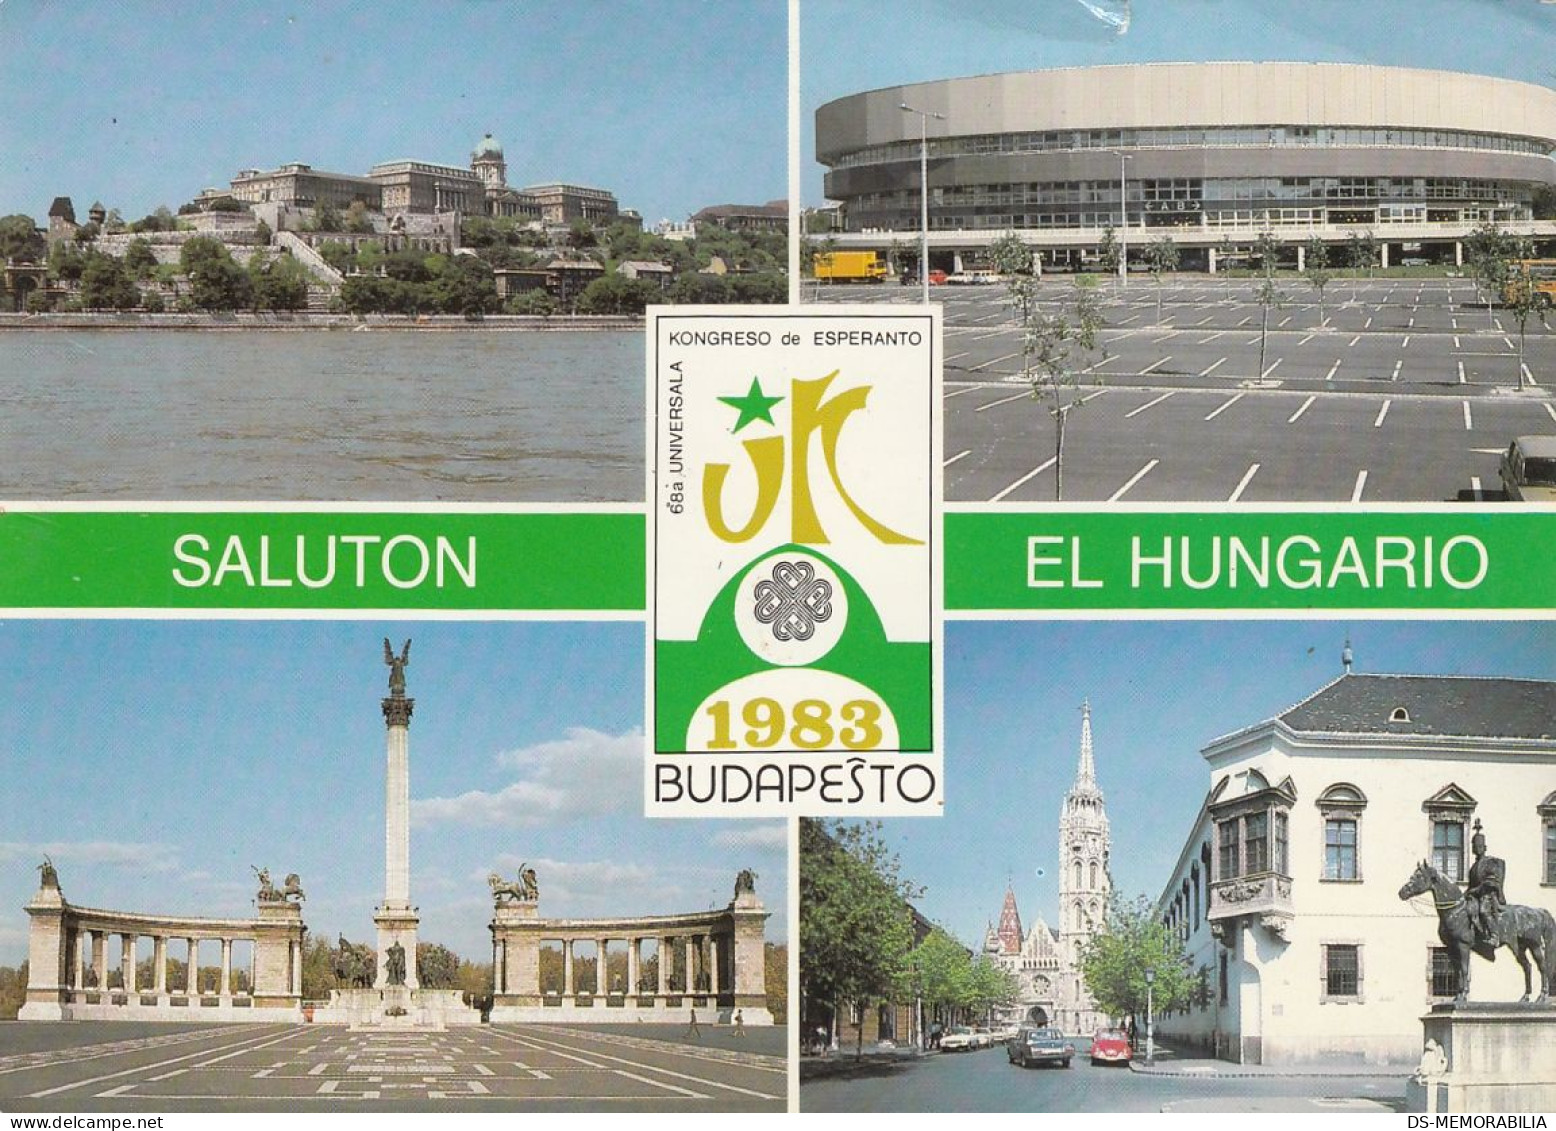 Esperanto Kongreso Budapest Hungary 1983 Old Postcard - Esperanto